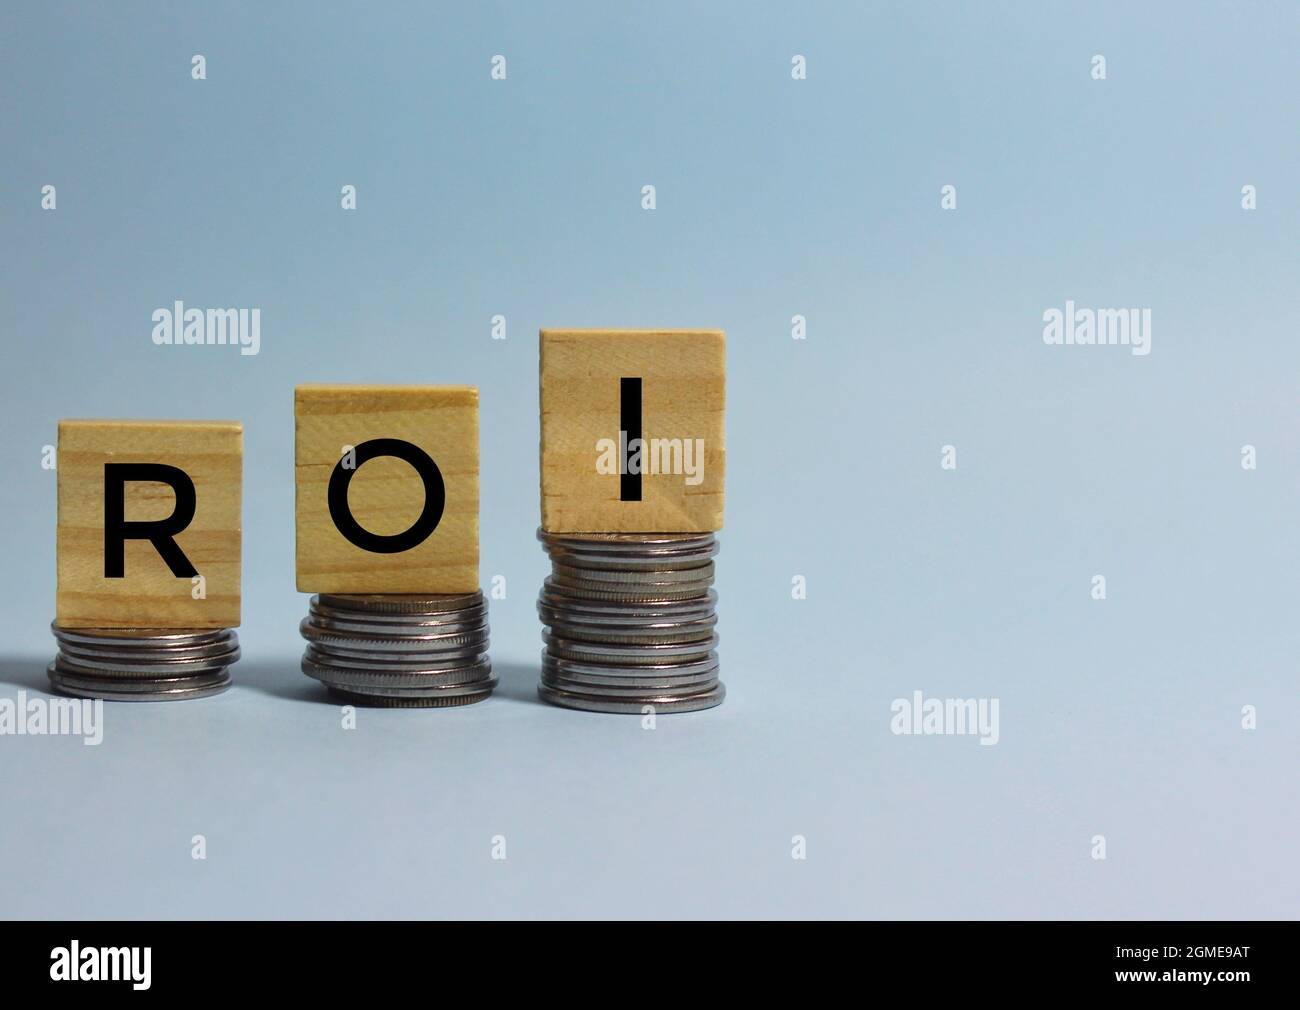 ROI o retorno de la inversión acrónimo escrito en cubos de madera encima de las monedas apiladas hacia arriba. Espacio de copia. Foto de stock